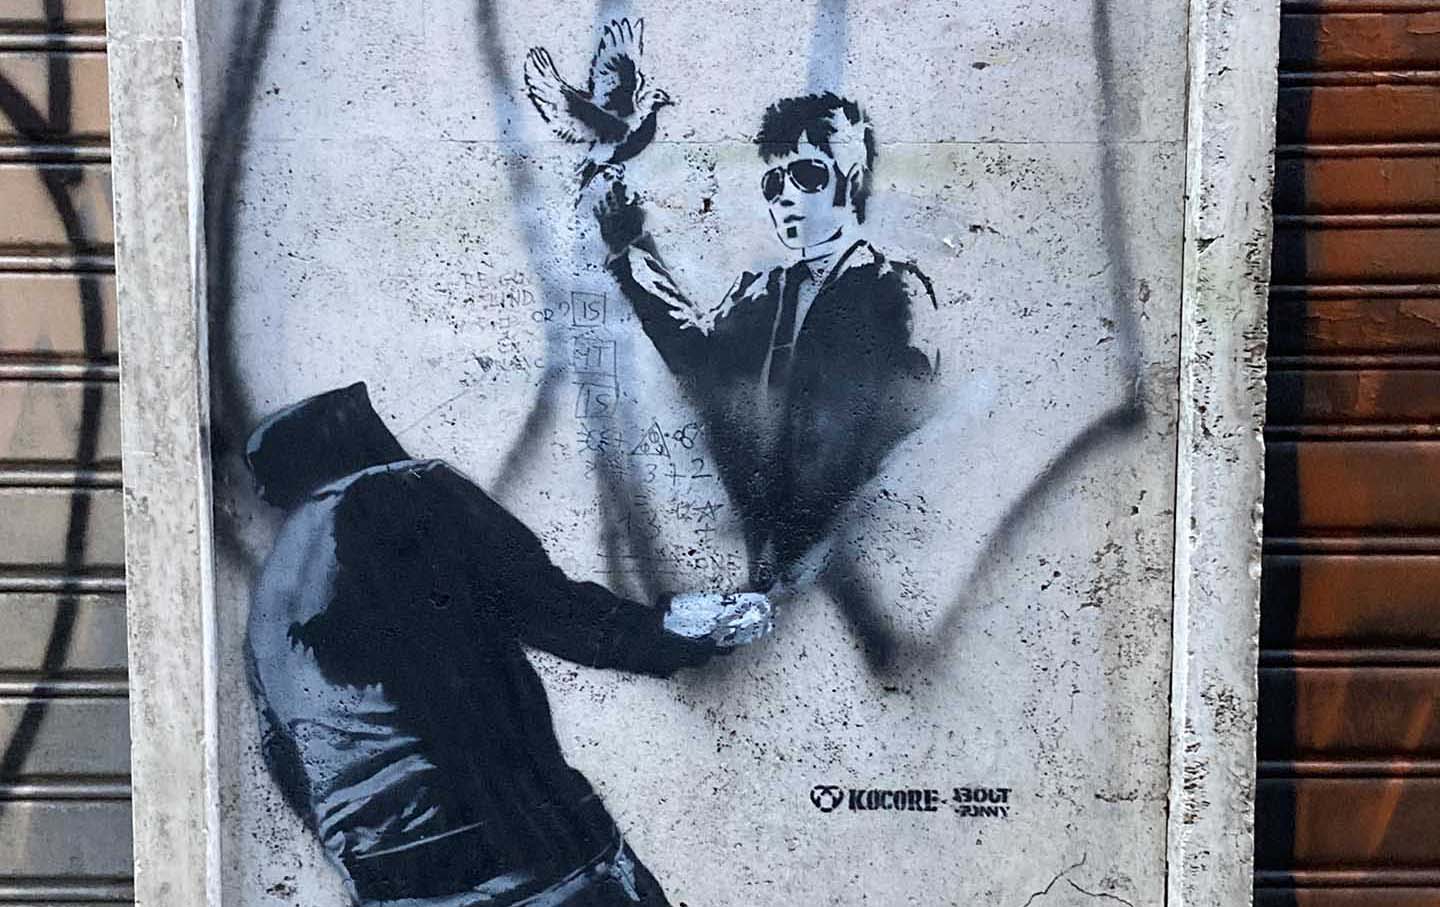 Street Art in Rome